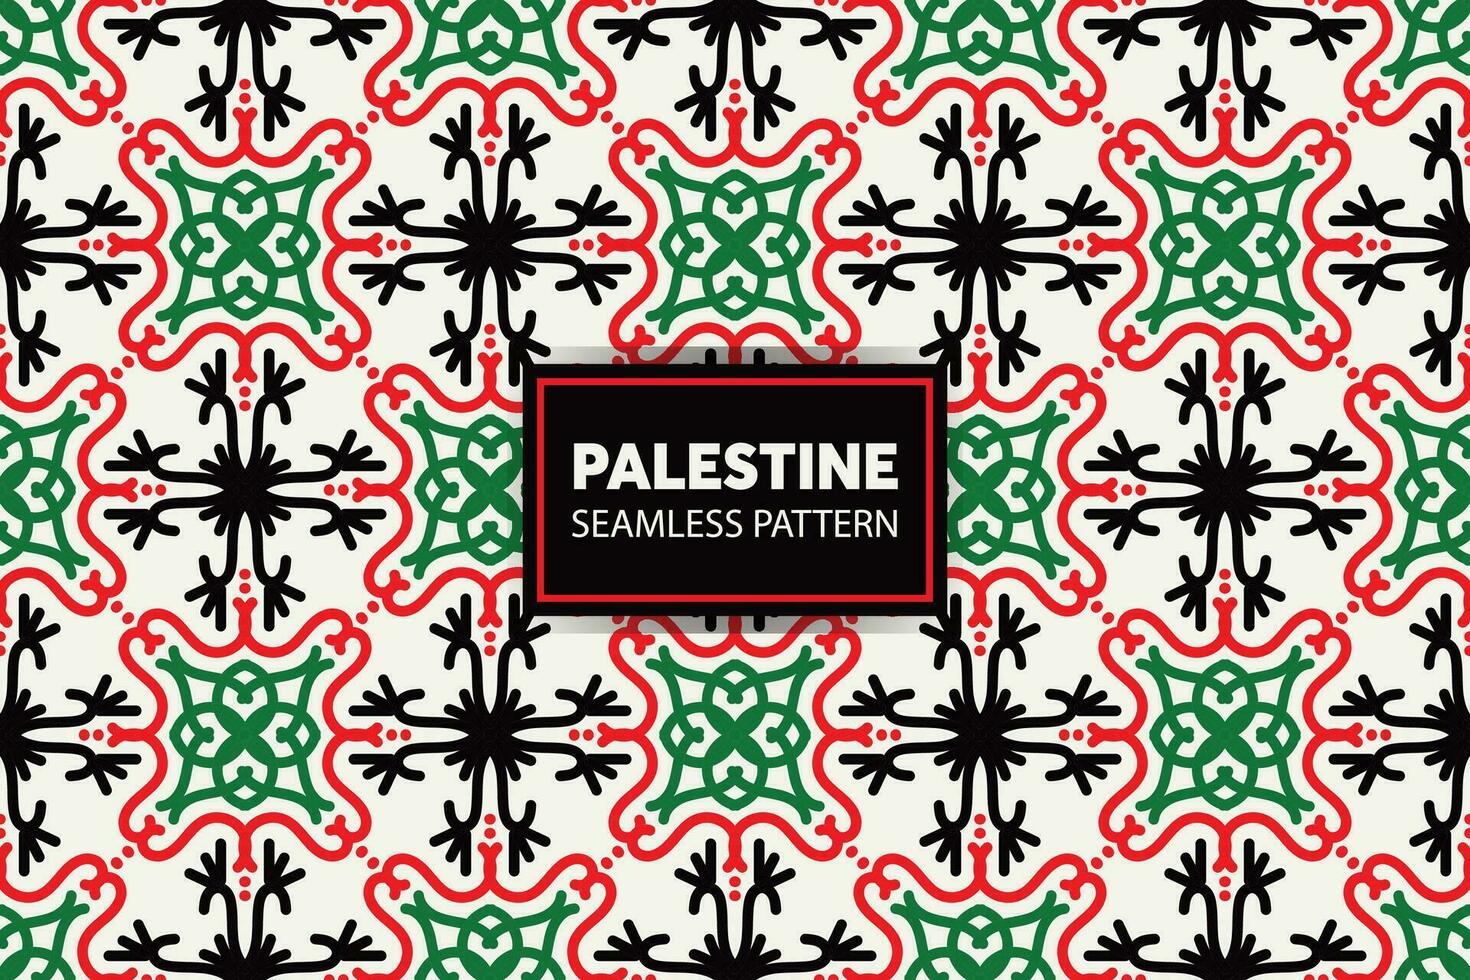 palestinsk broderi mönster bakgrund. bra för presentationer och rutschbanor. vektor fil.